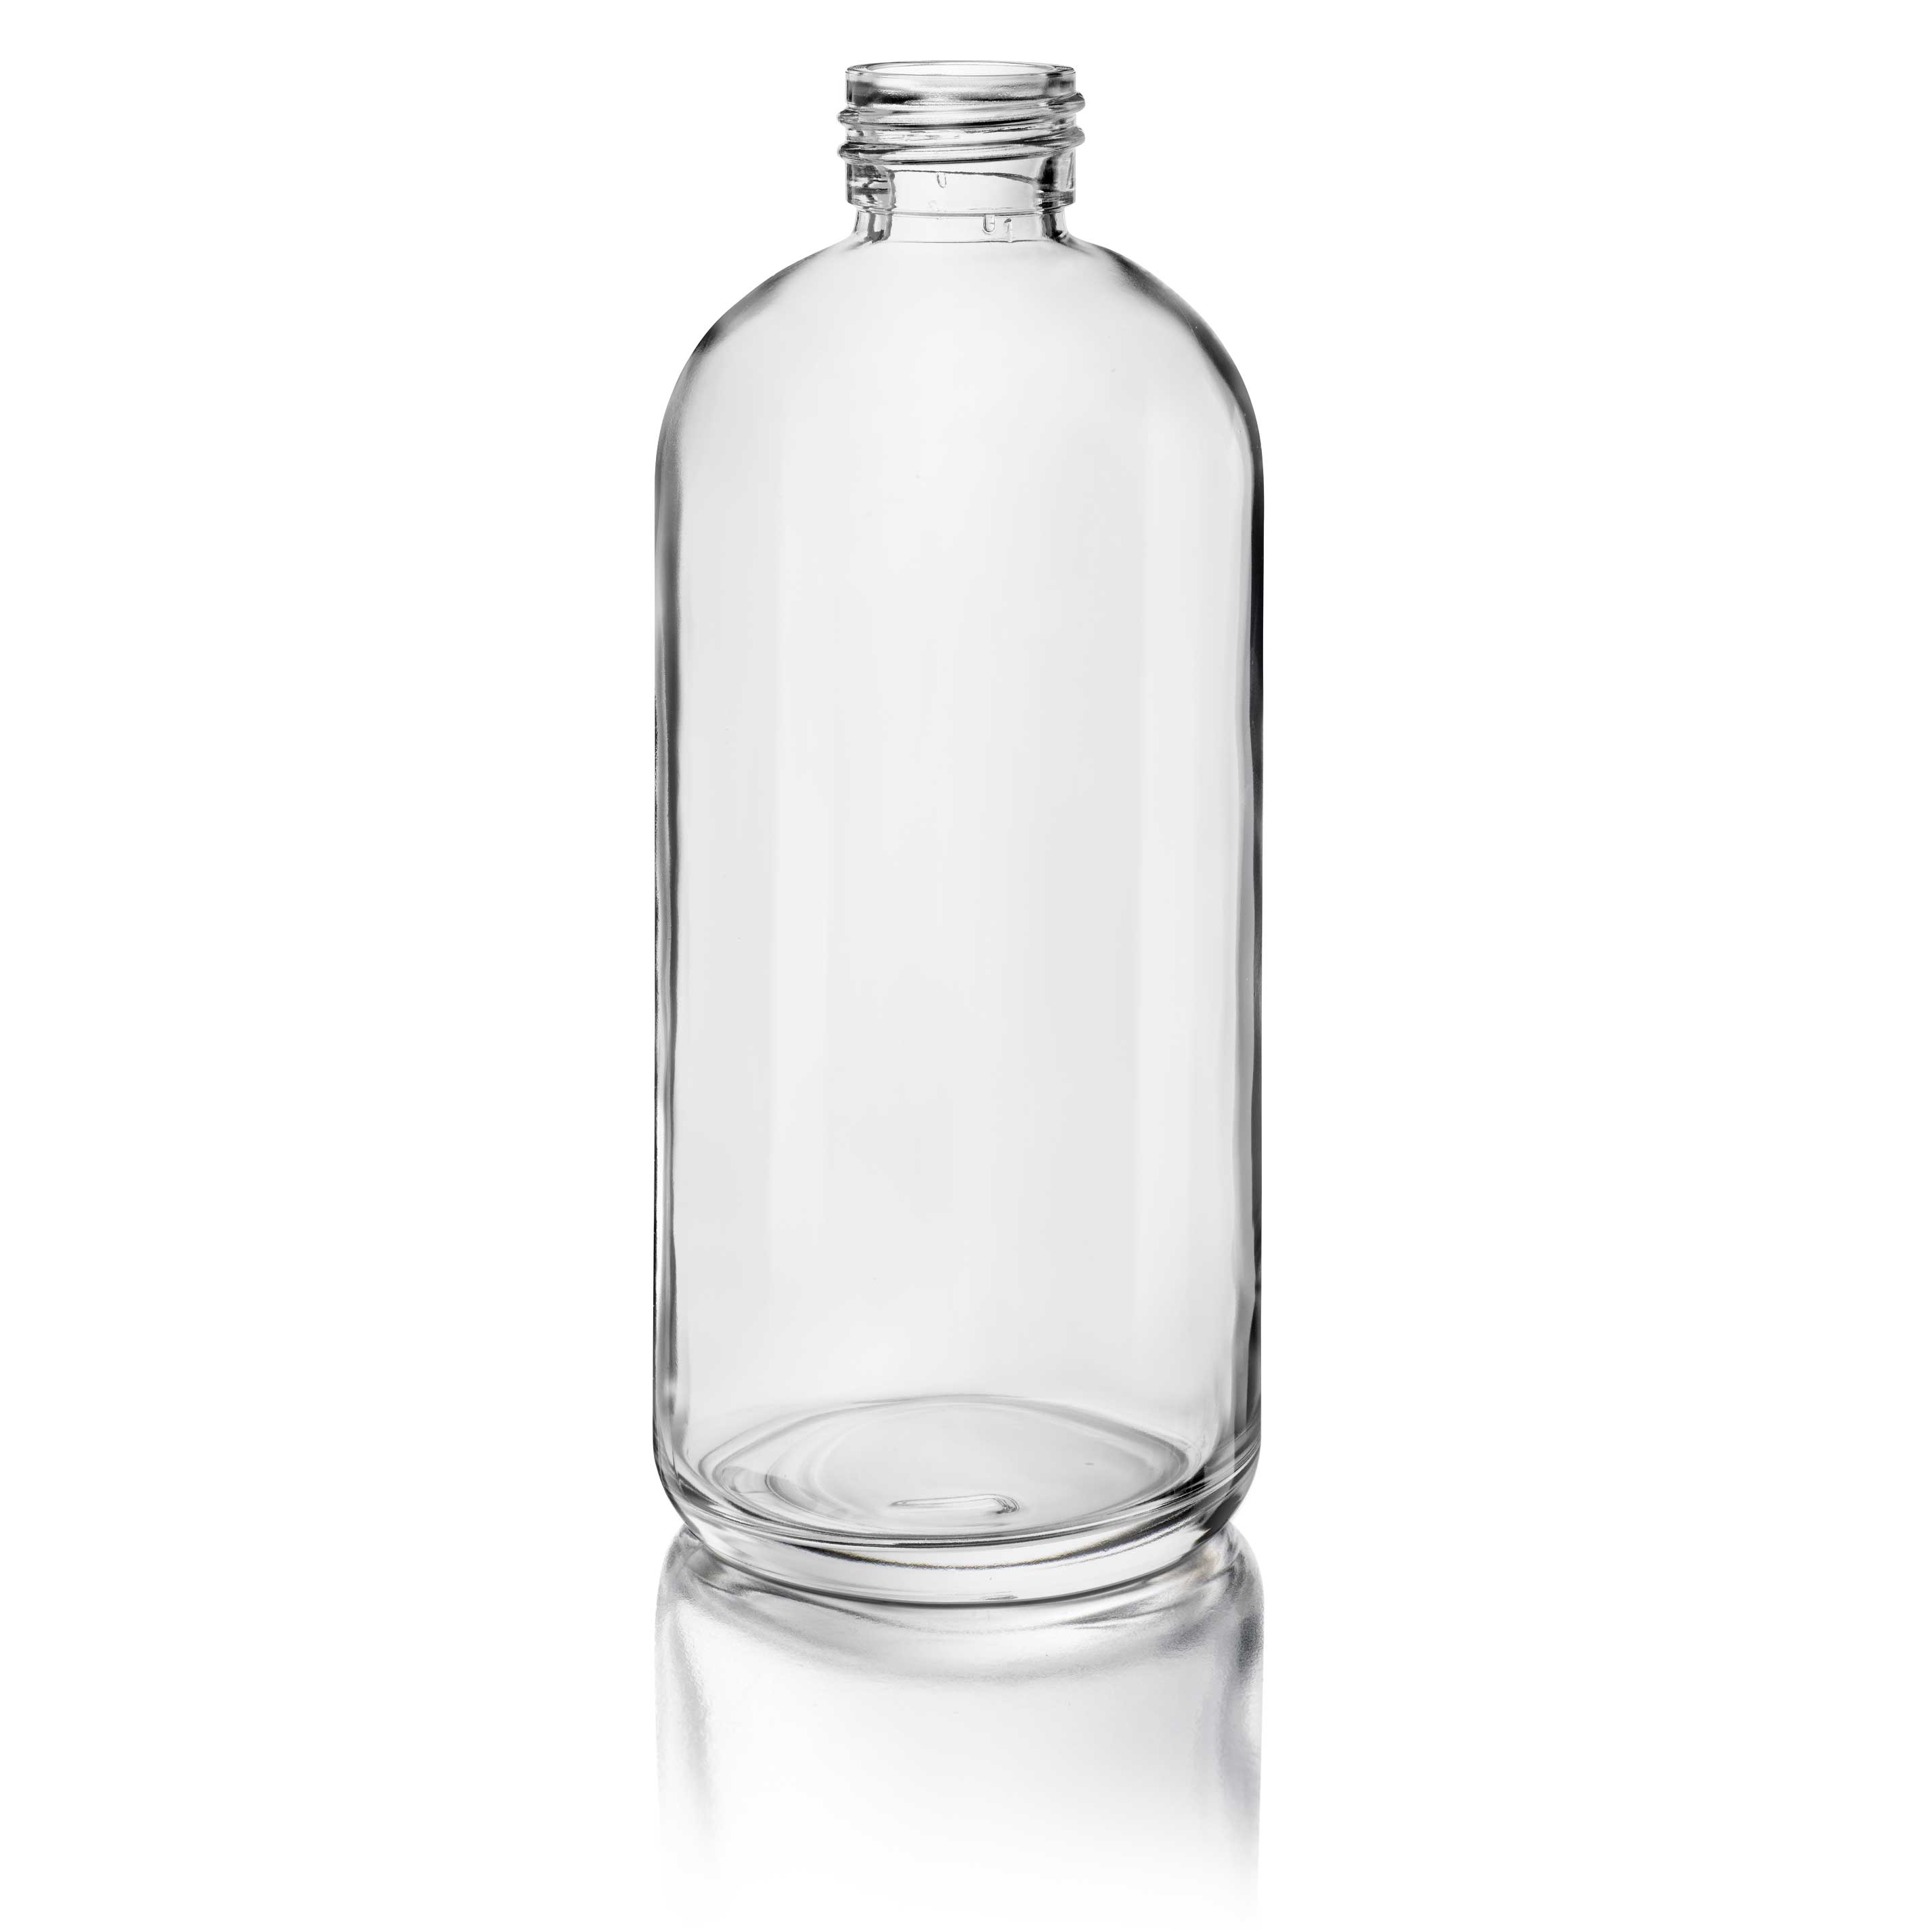 Cosmetic bottle Linden Light Weight 200ml, 24/410, Flint